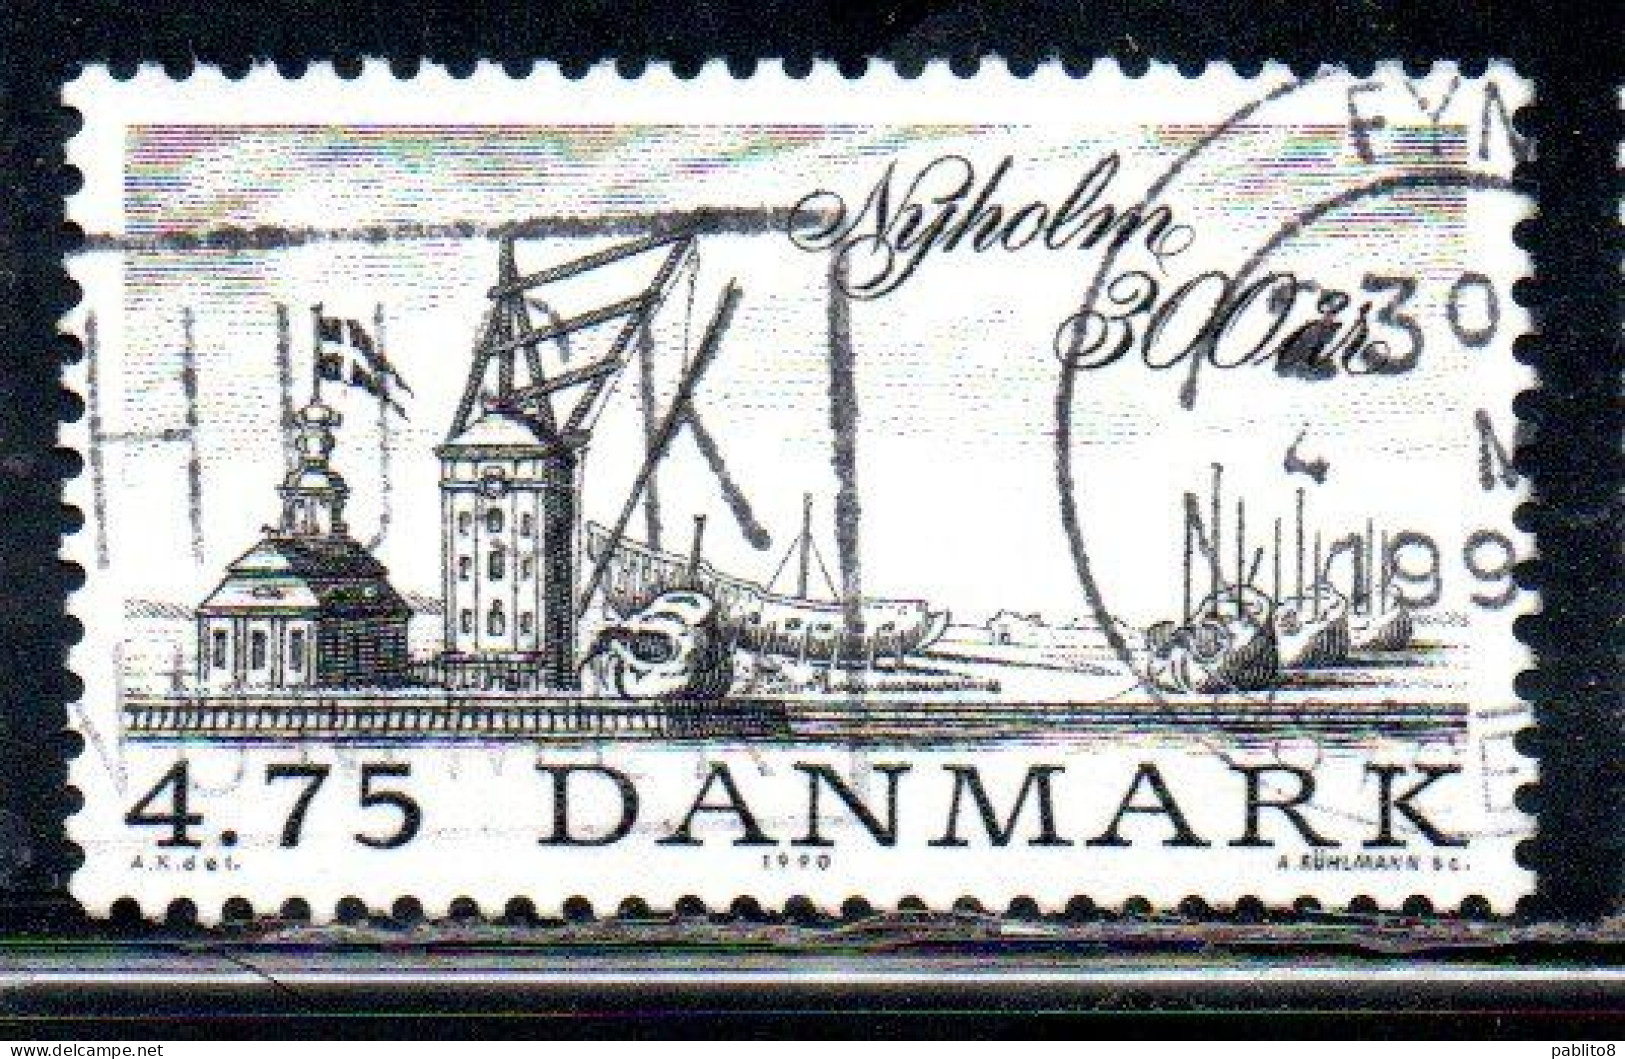 DANEMARK DANMARK DENMARK DANIMARCA 1990 NYHOLM 300th ANNIVERSARY 4.75k USED USATO OBLITERE' - Covers & Documents